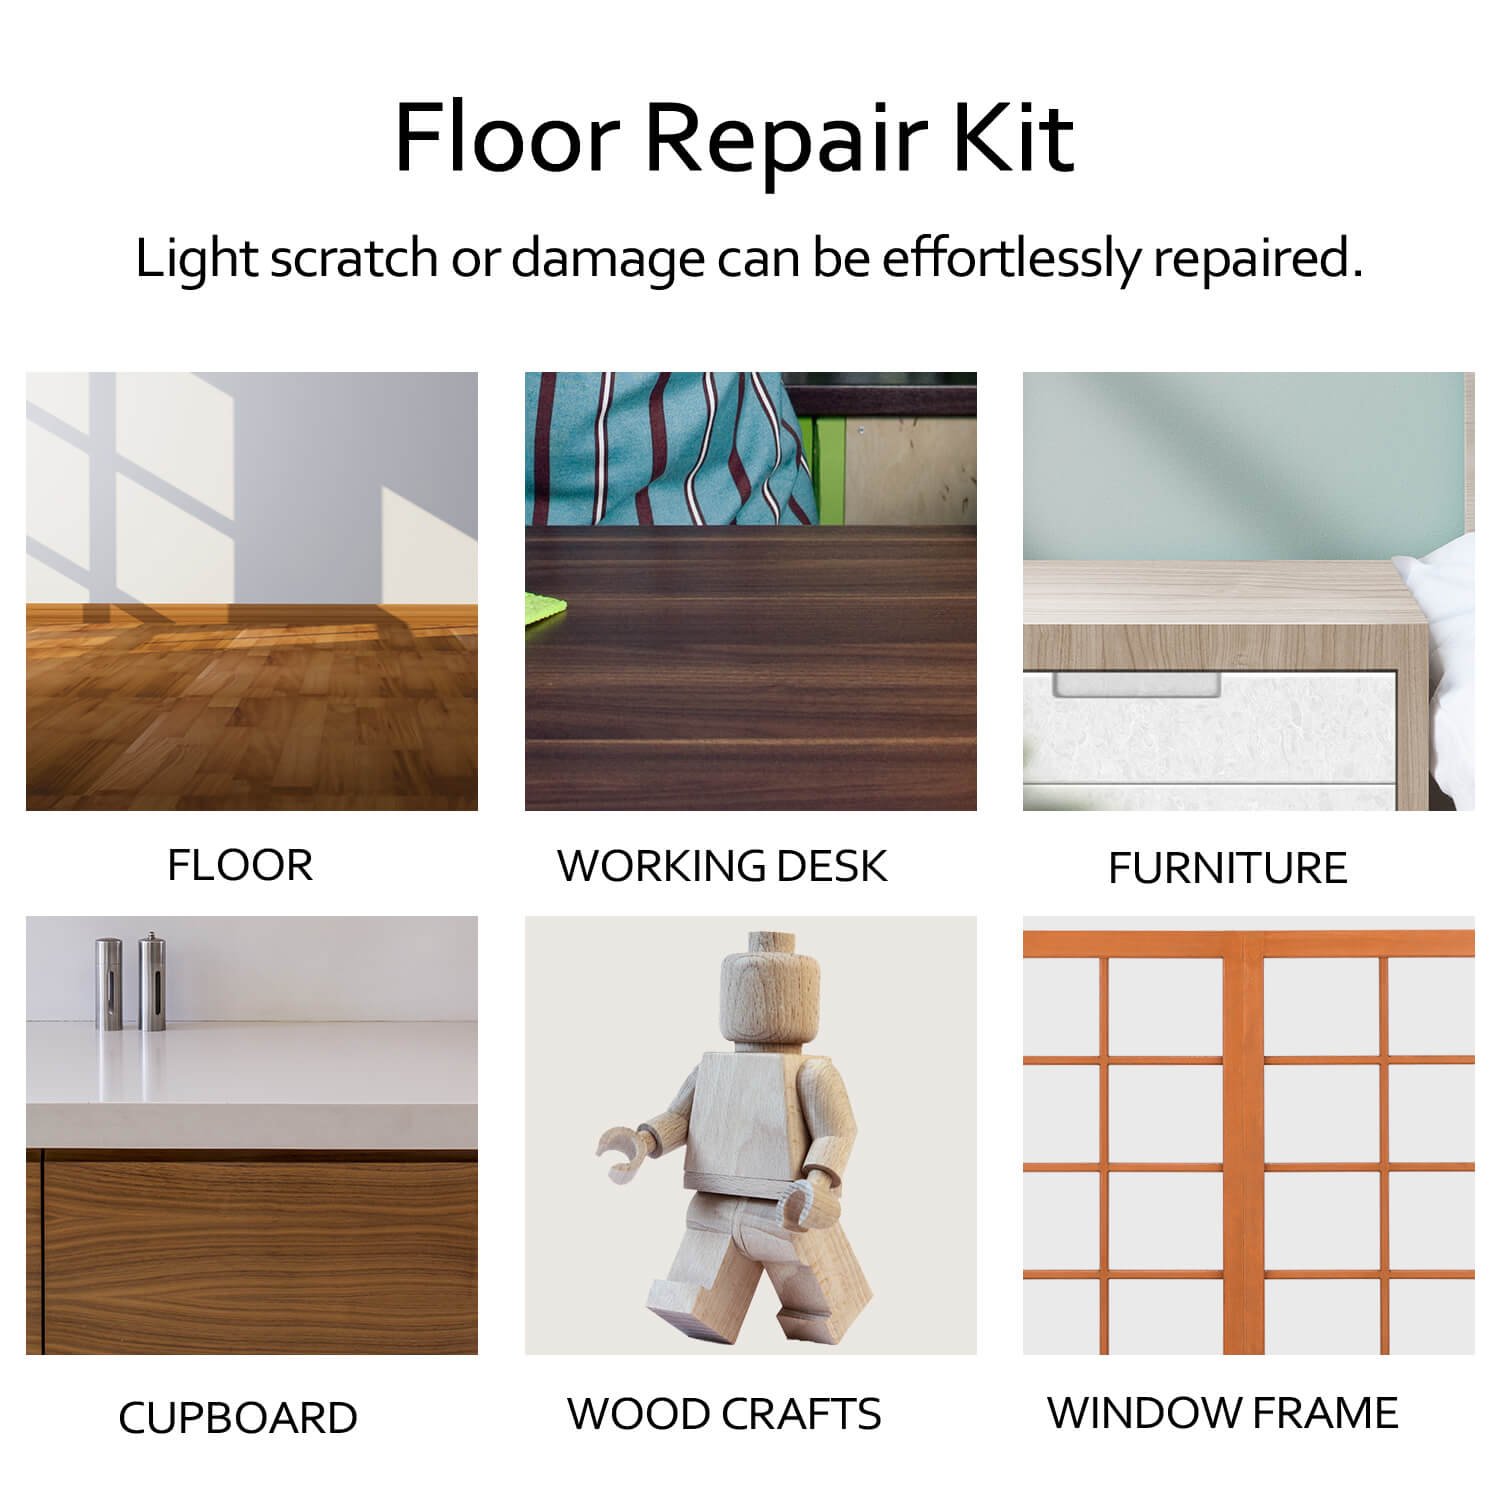 🔥HOT SALE - 48%OFF🔥DIY Manual Floor Furniture Repair Kit